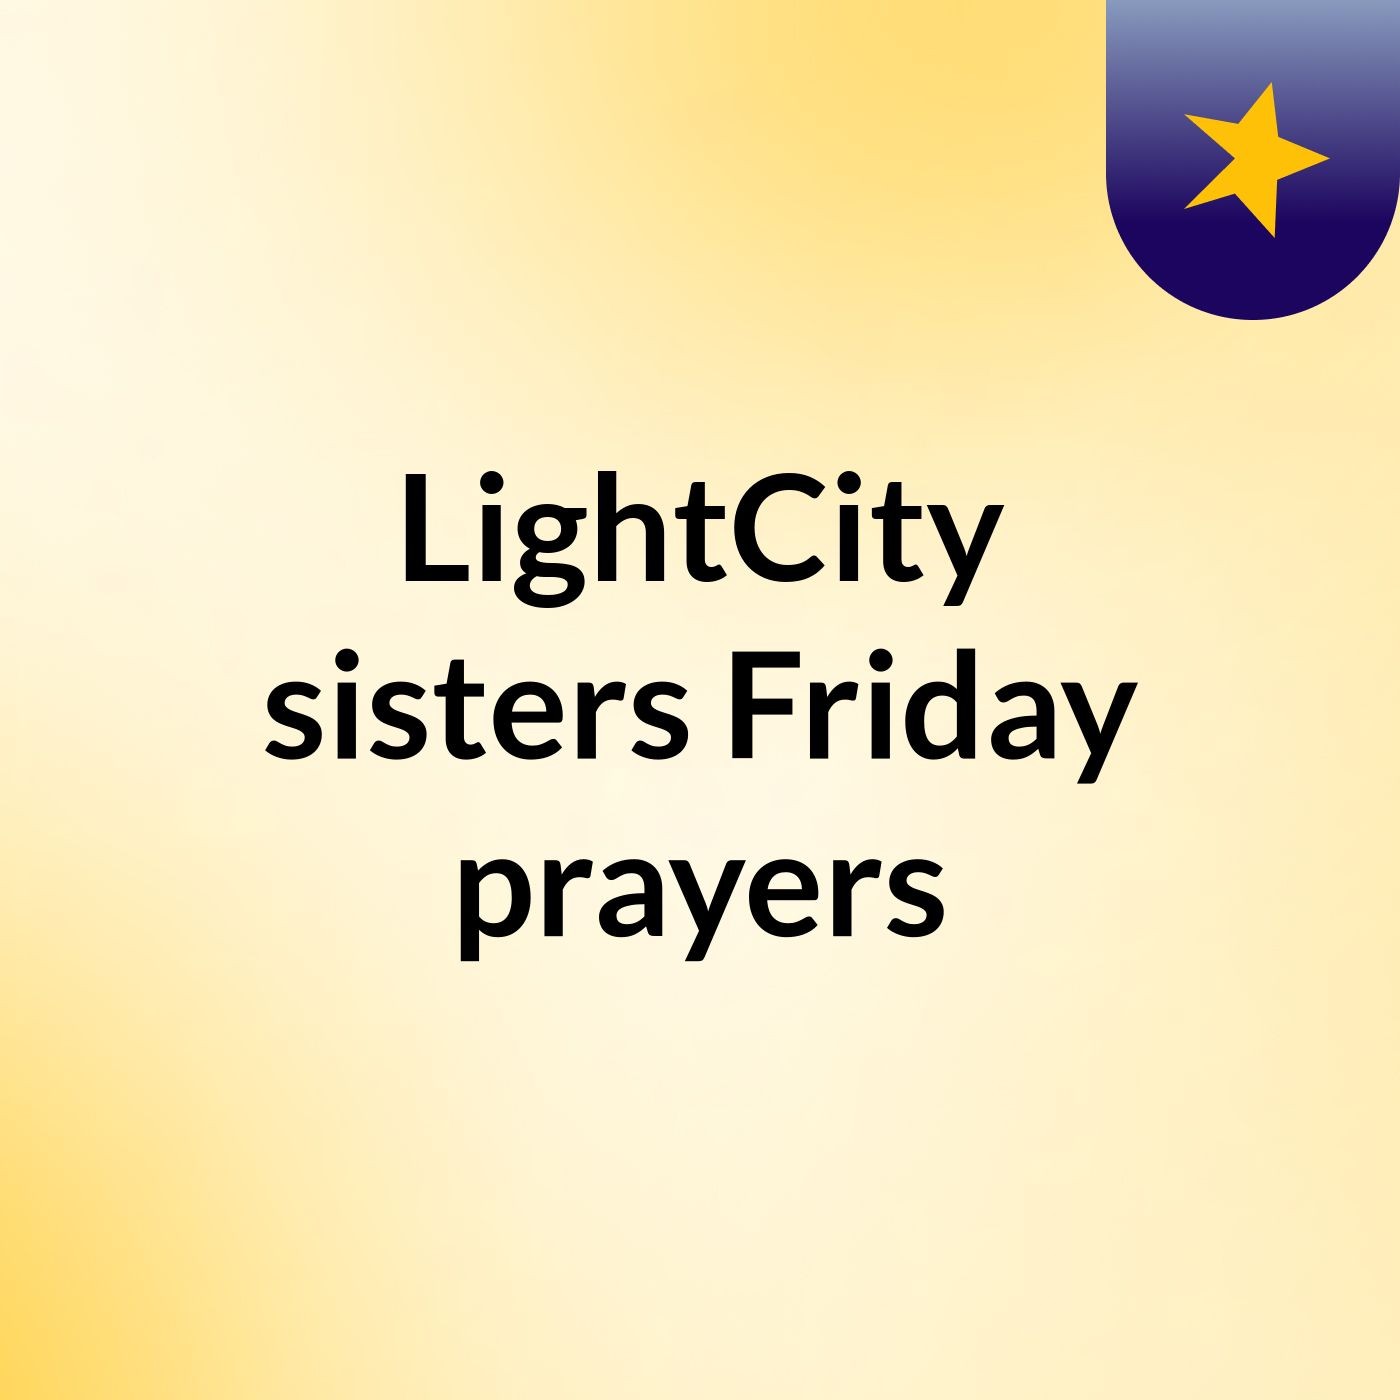 Episode 5 - LightCity sisters Friday prayers